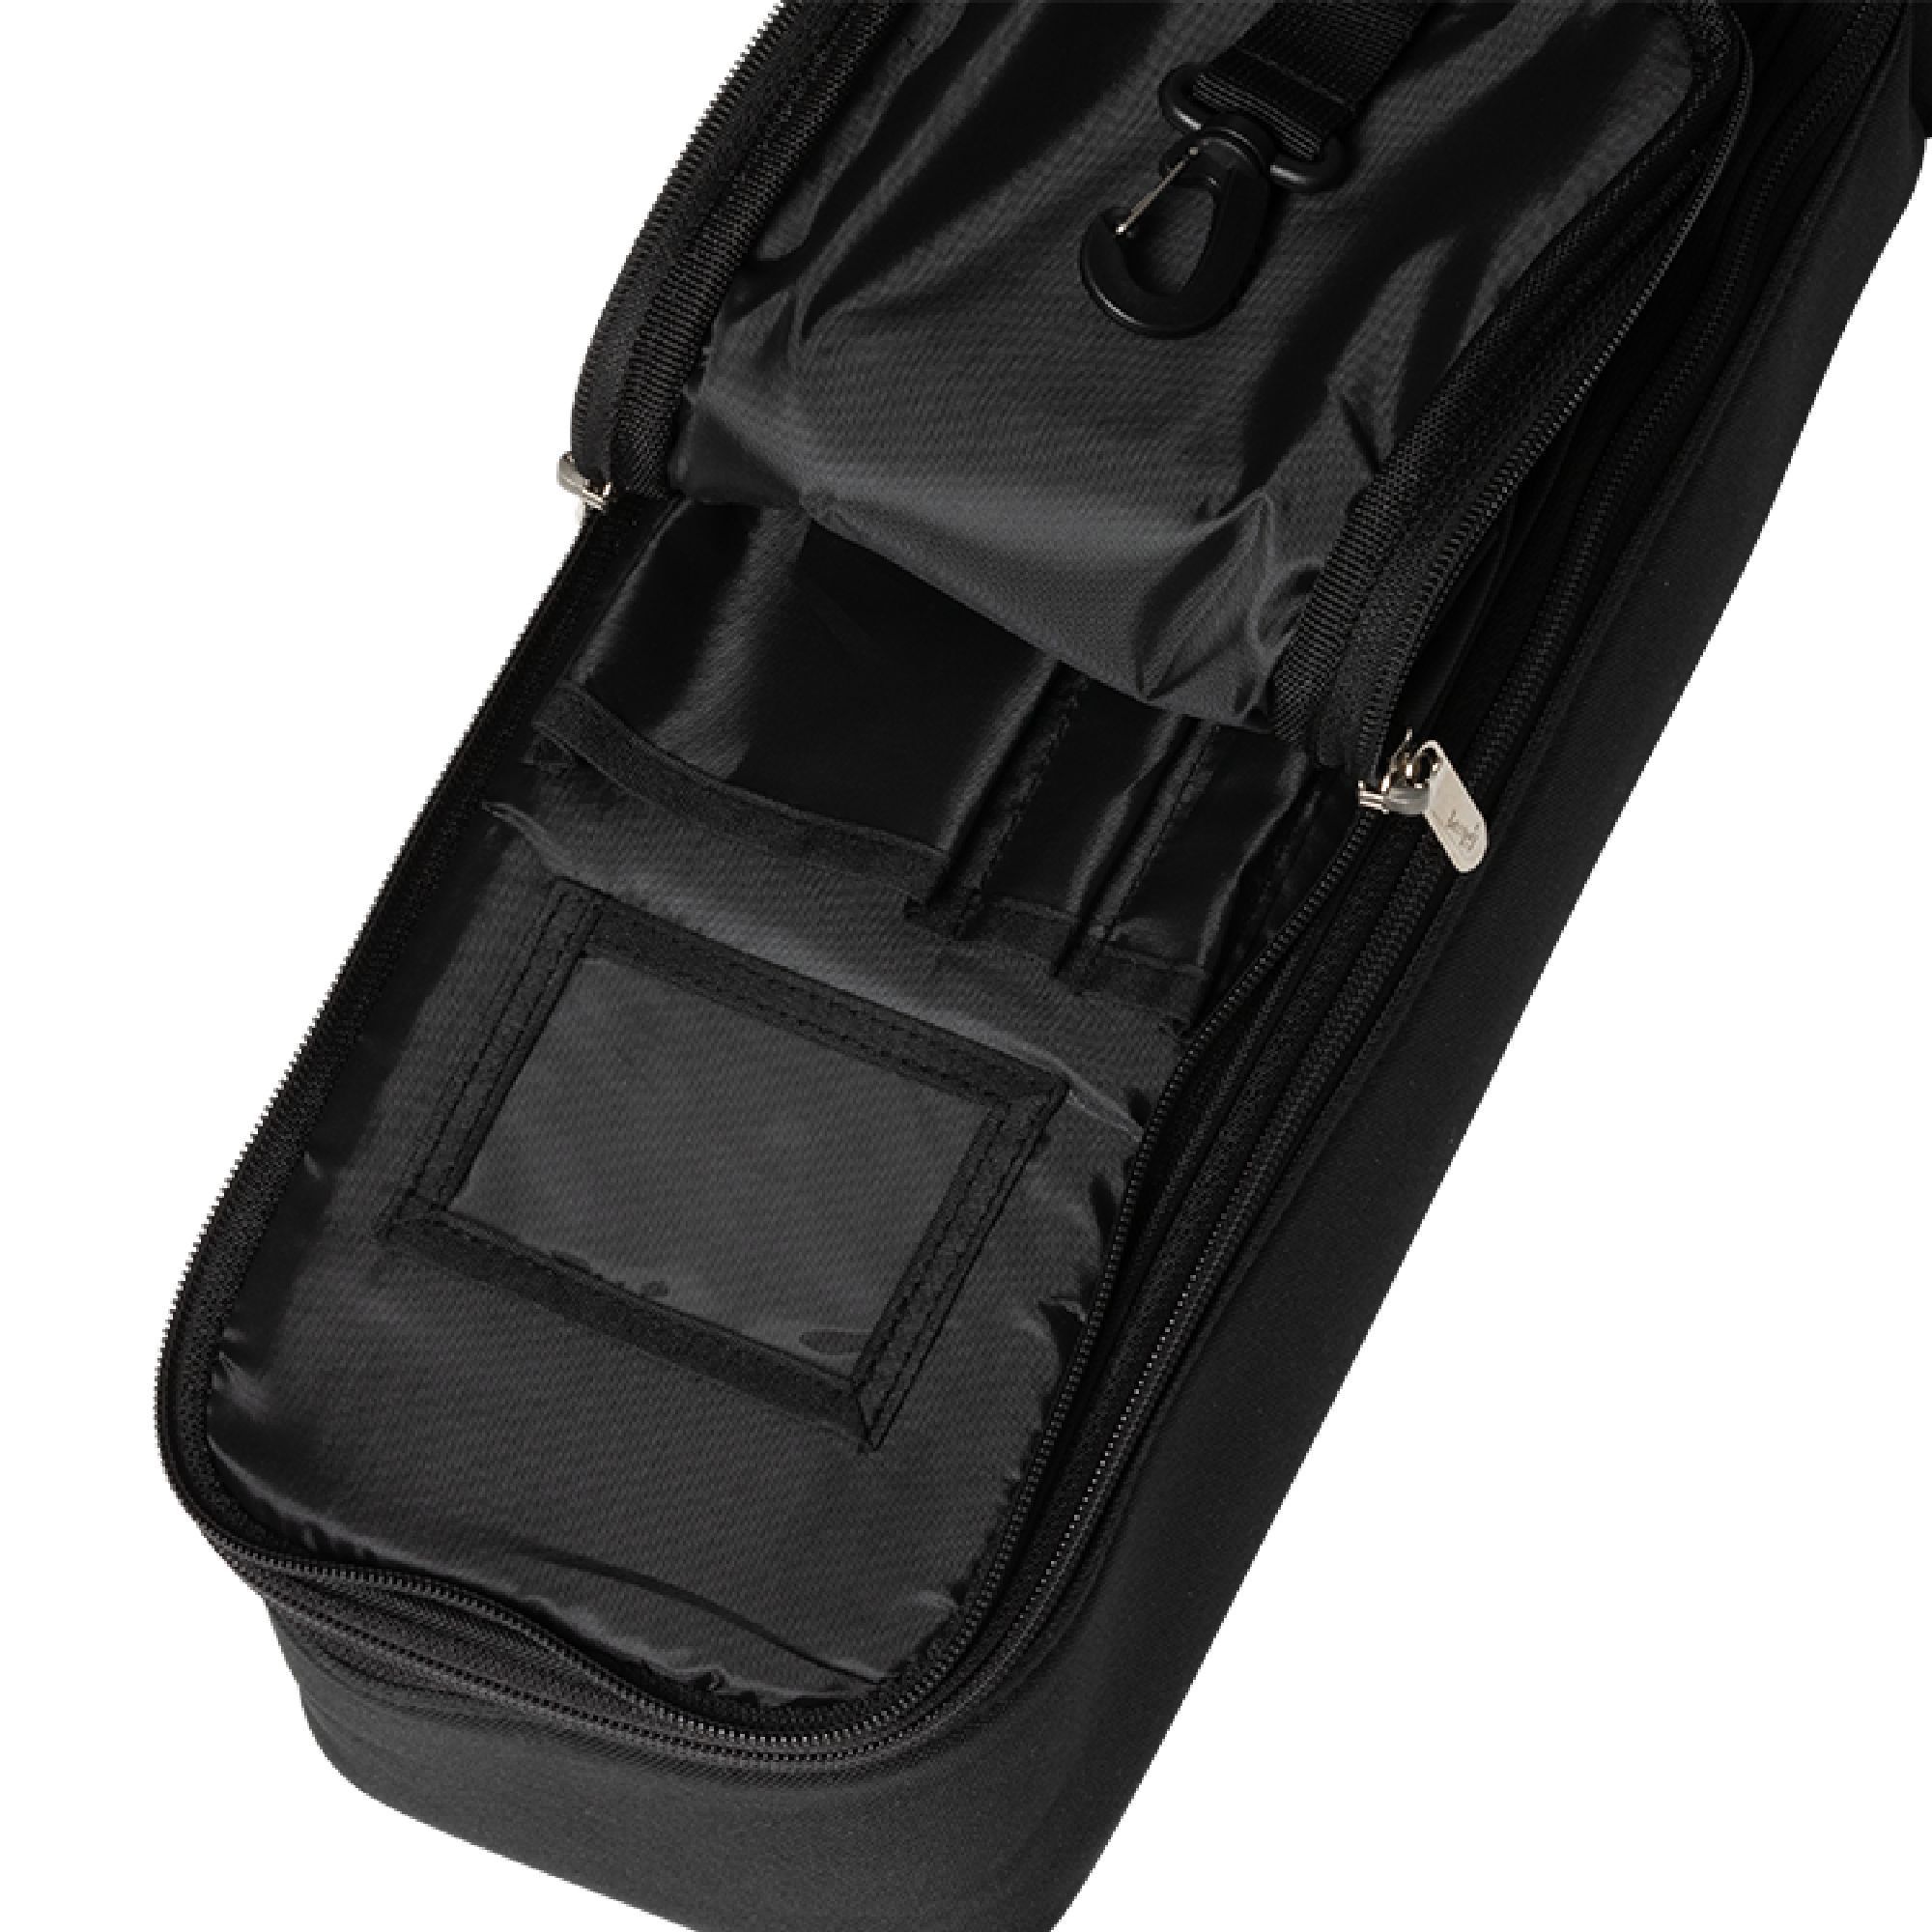 Gibson Premium Gigbag, SJ-200 Black Чехлы и кейсы для гитар